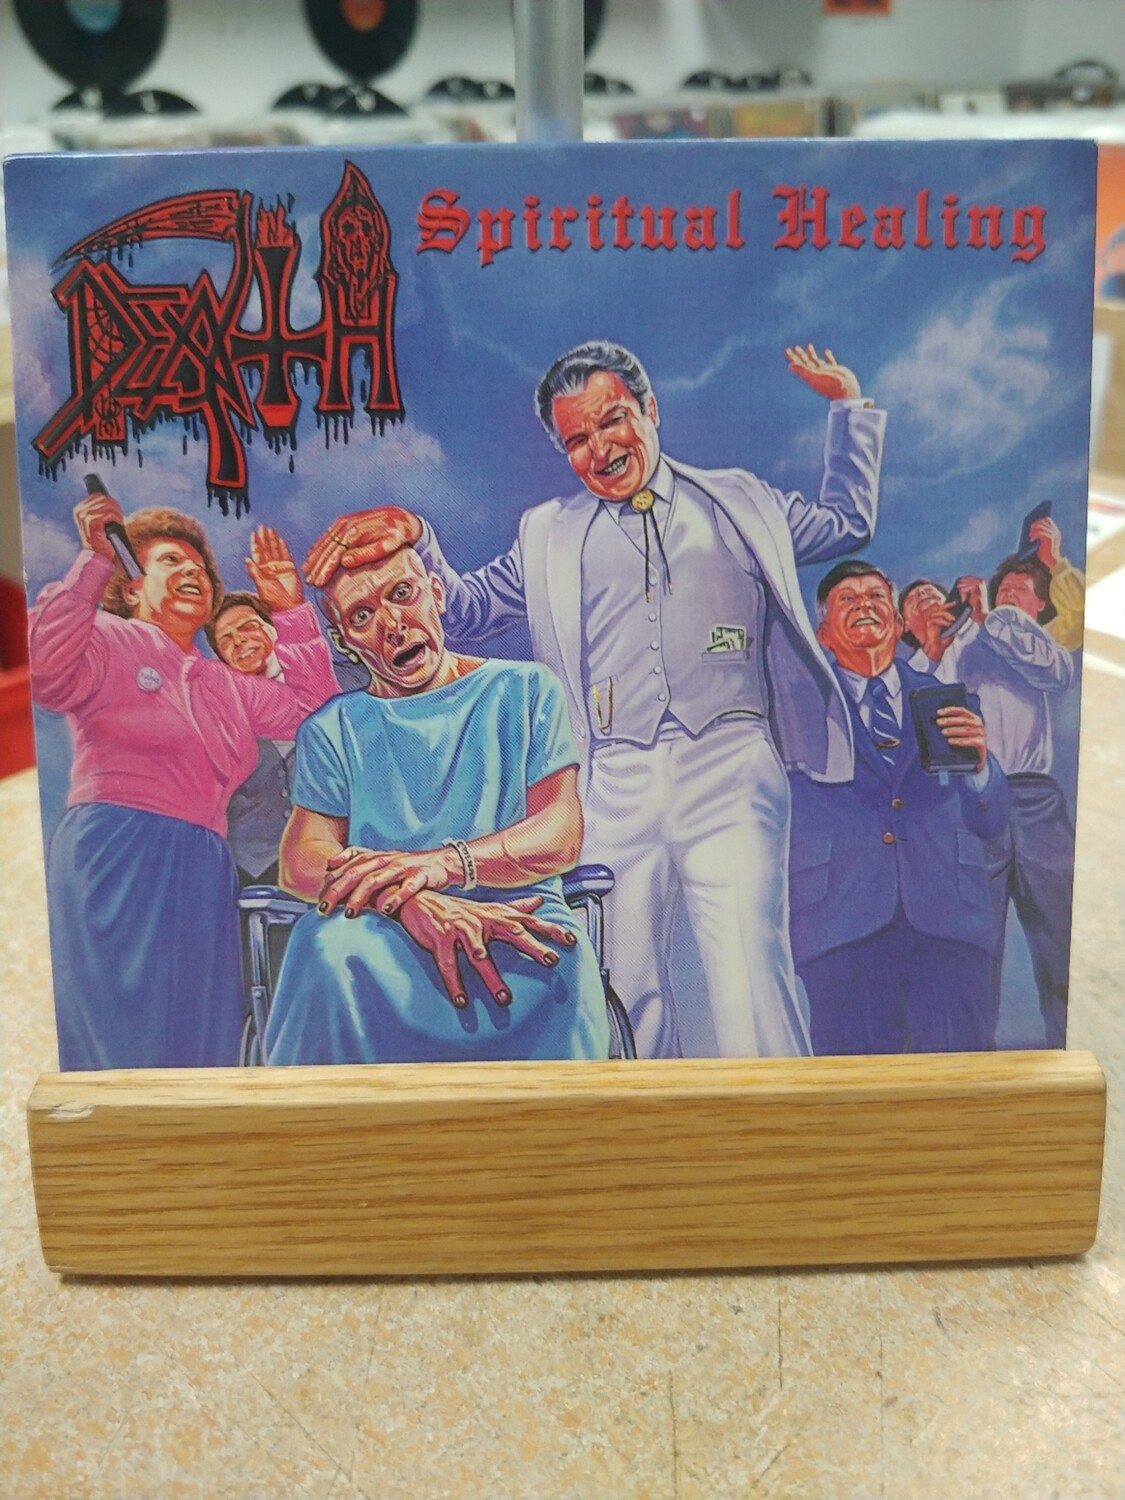 Death - Spiritual Healing (CD)